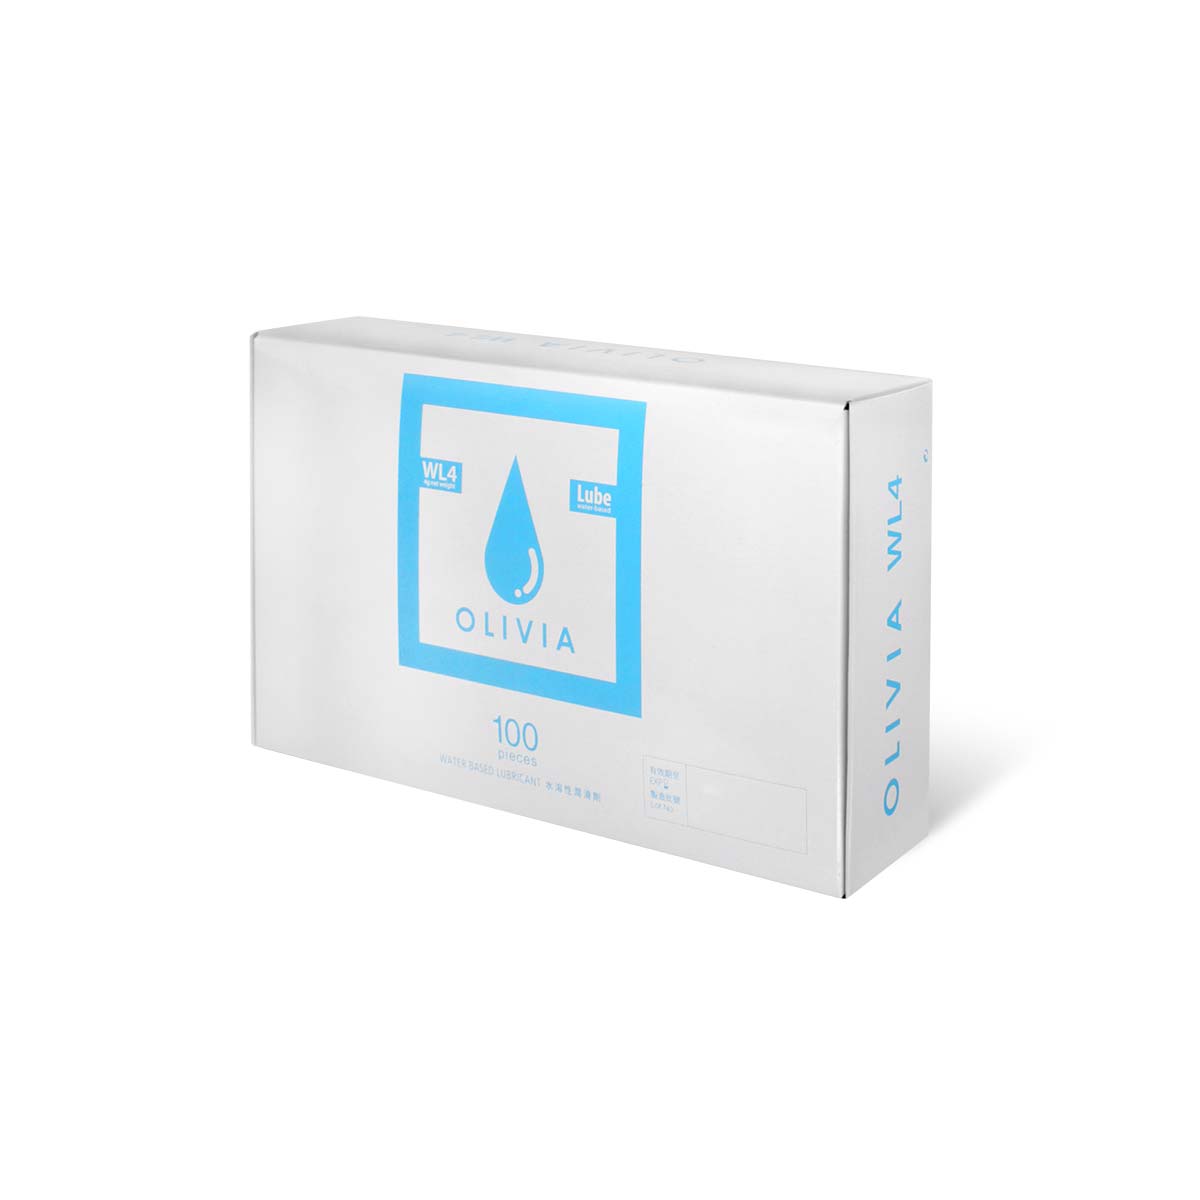 奧莉維亞 WL4 旅行小包裝 100 片裝 水性潤滑劑-p_1